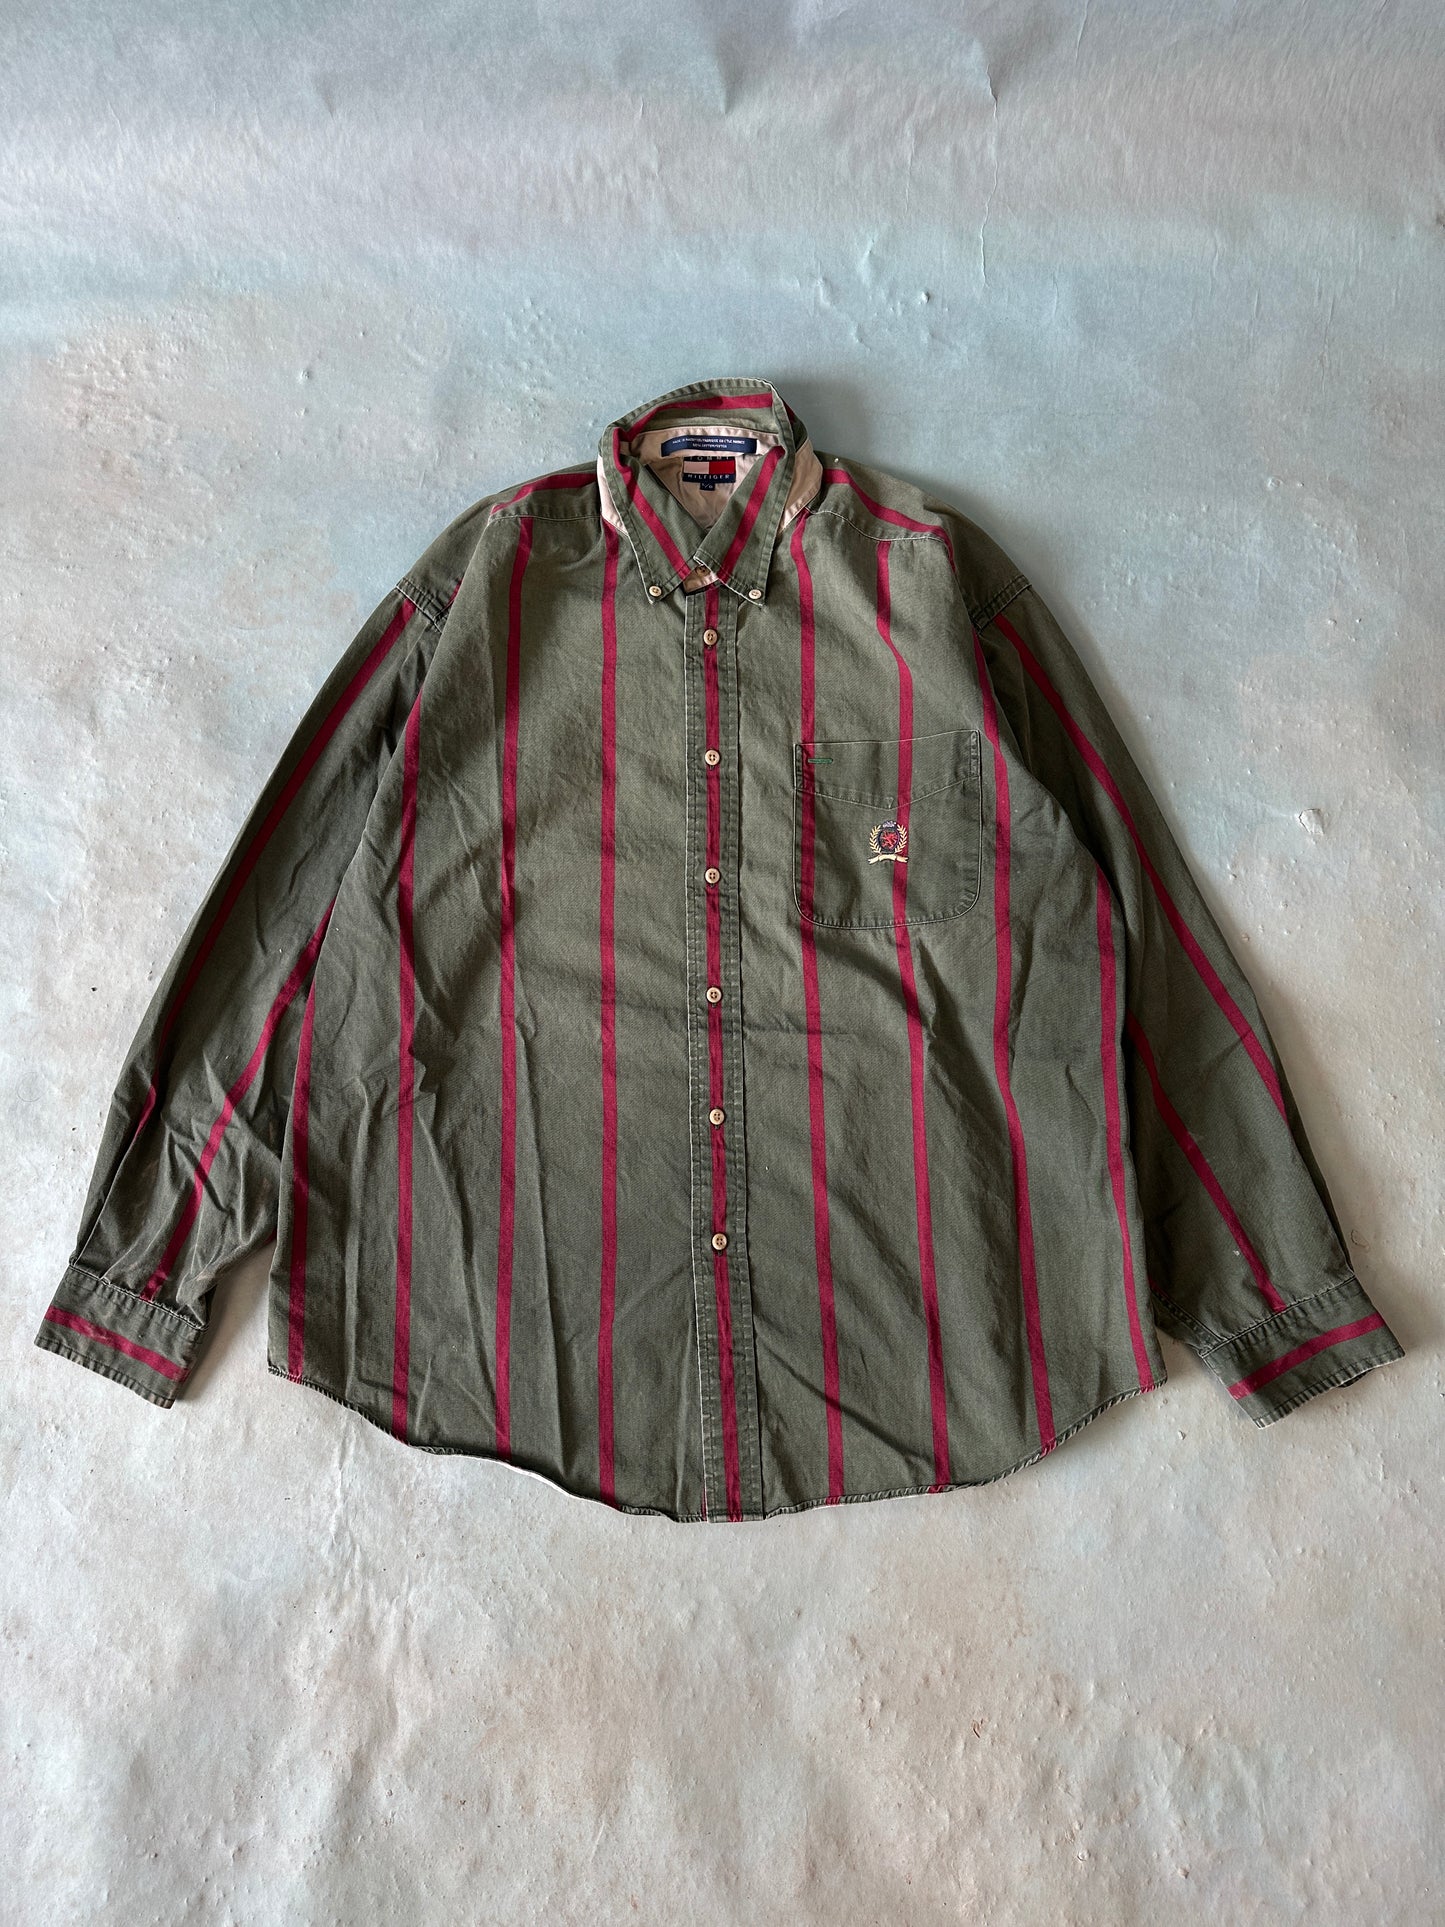 Camisa Tommy Lineas Vintage - L